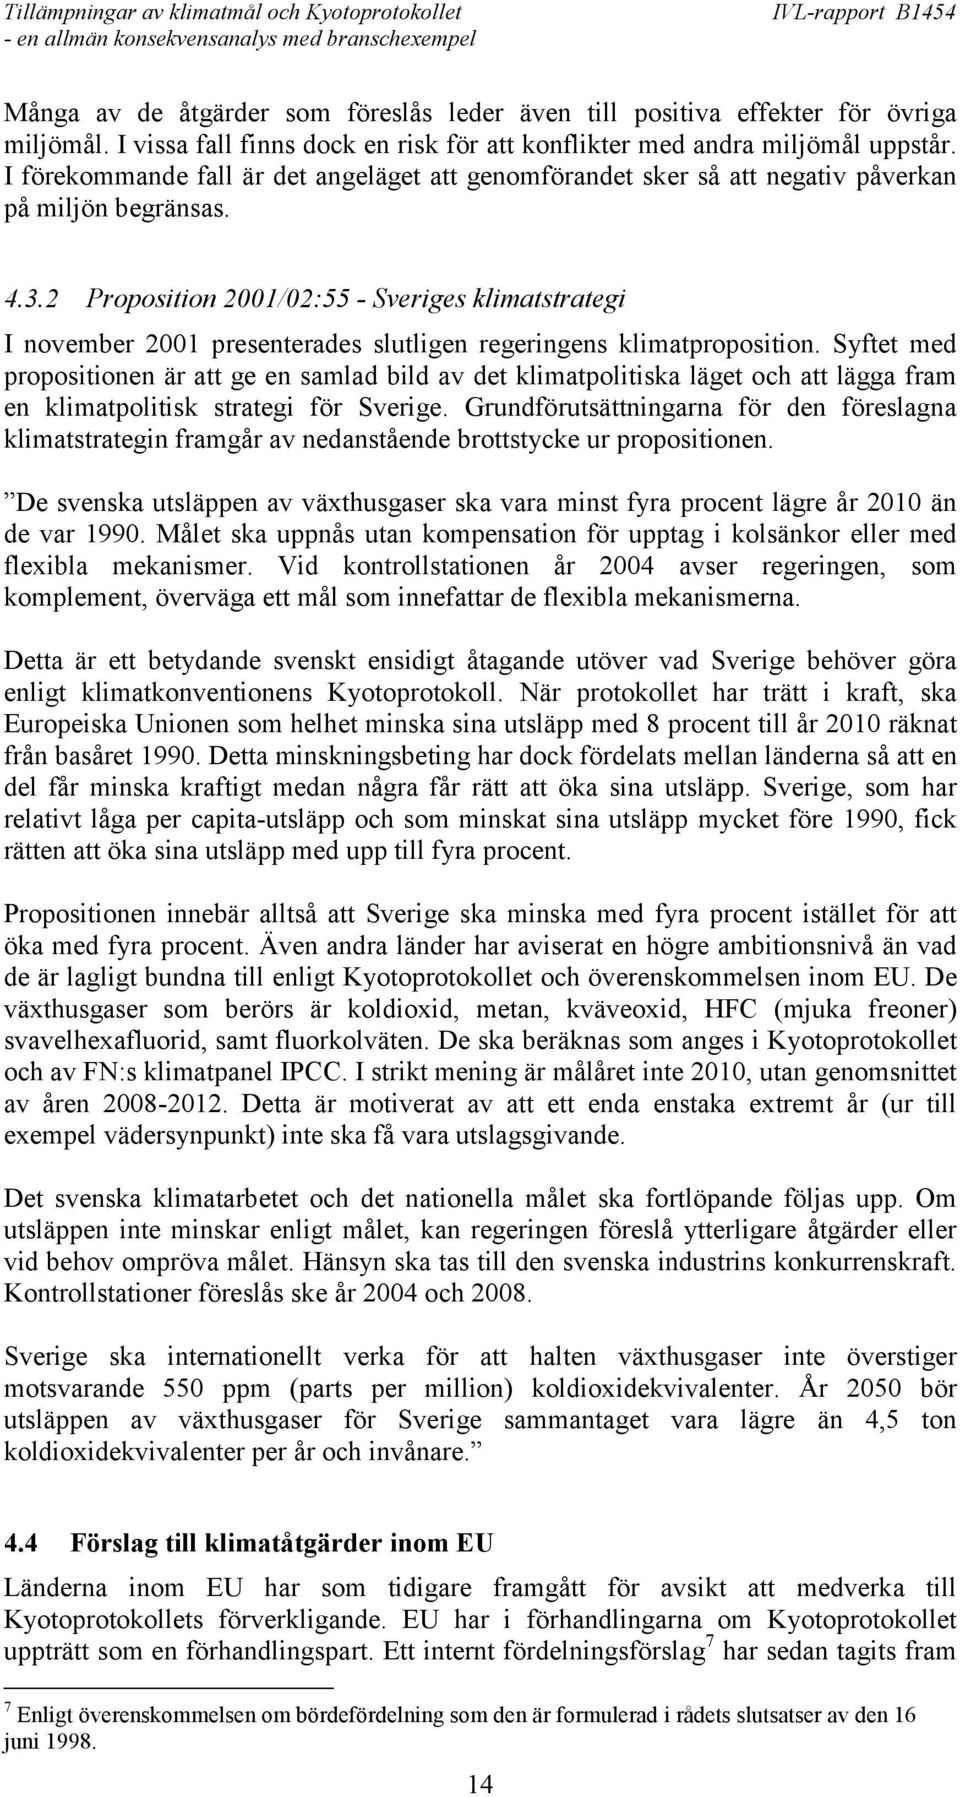 2 Proposition 2001/02:55 - Sveriges klimatstrategi I november 2001 presenterades slutligen regeringens klimatproposition.